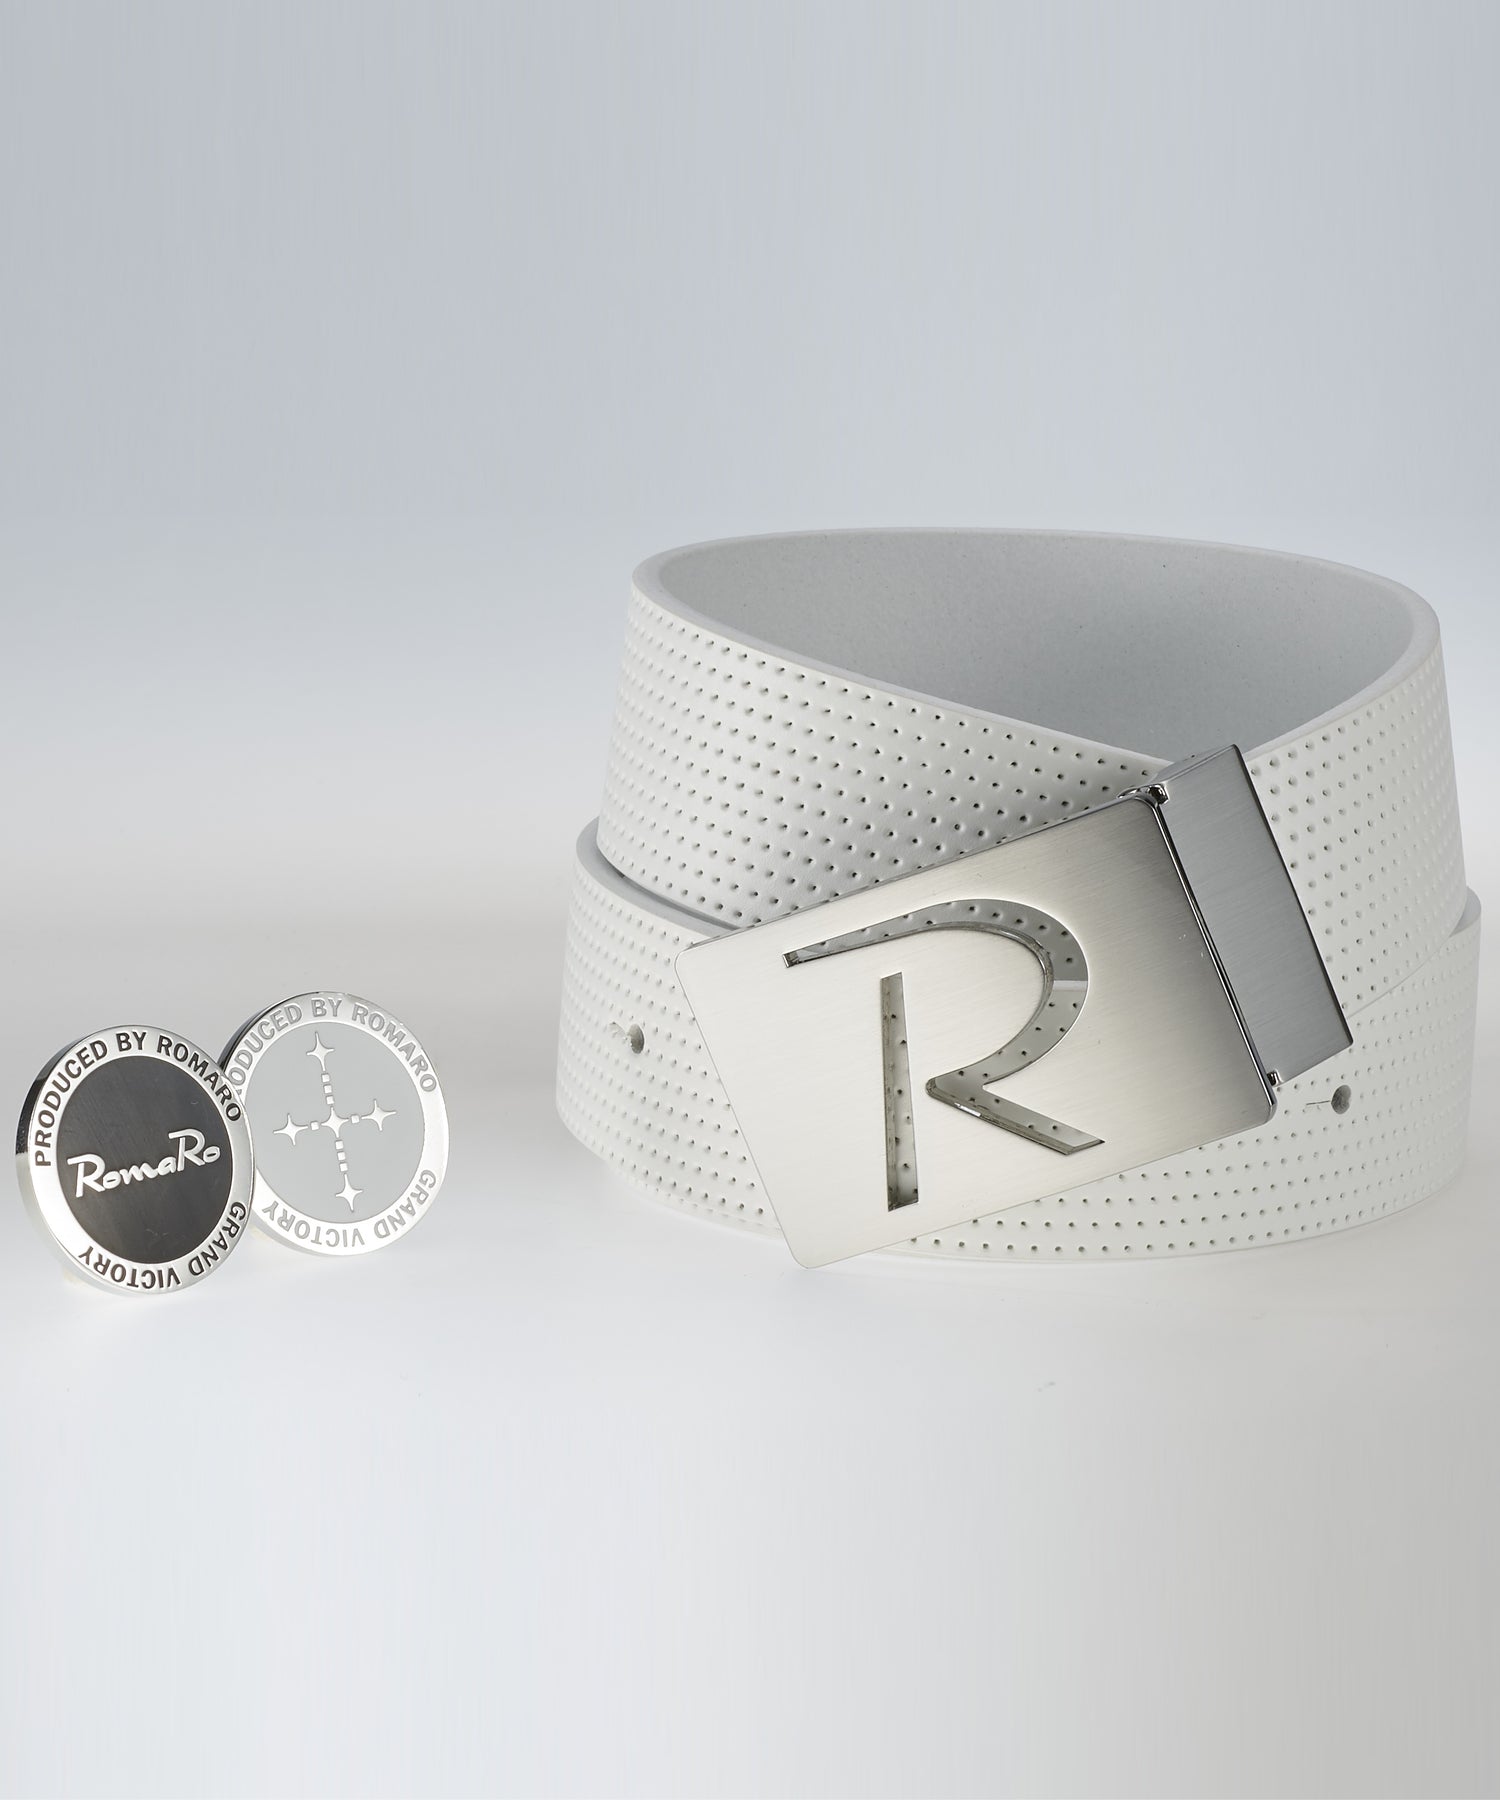 R-BELT – RomaRo Design